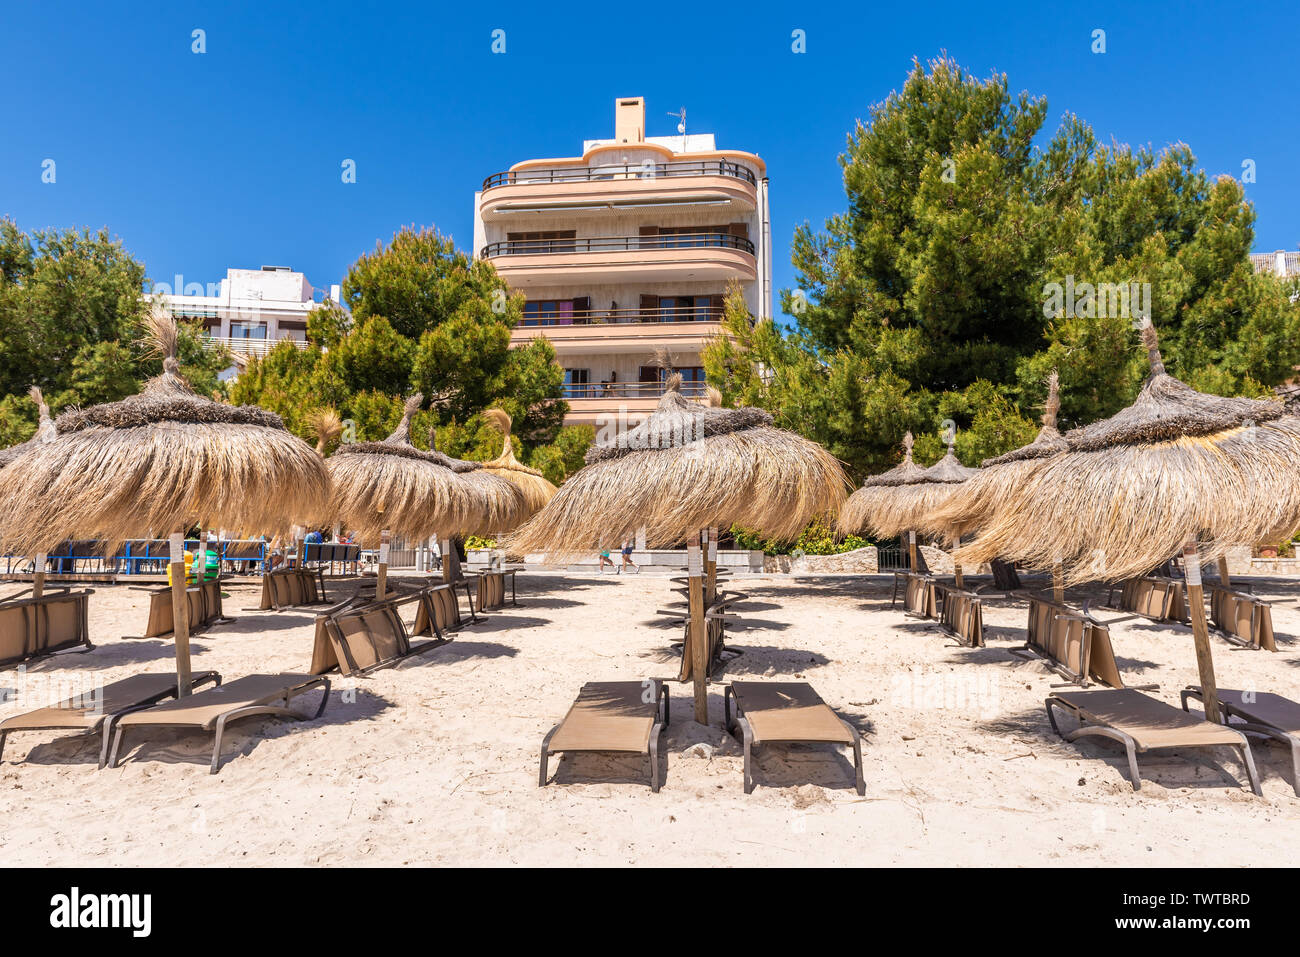 MALLORCA, SPANIEN - 6. Mai 2019: Stroh Sonnenschirme am Strand in Port de Pollenca (Puerto Pollensa), einem beliebten Family Resort im nord-westlich von mallor Stockfoto